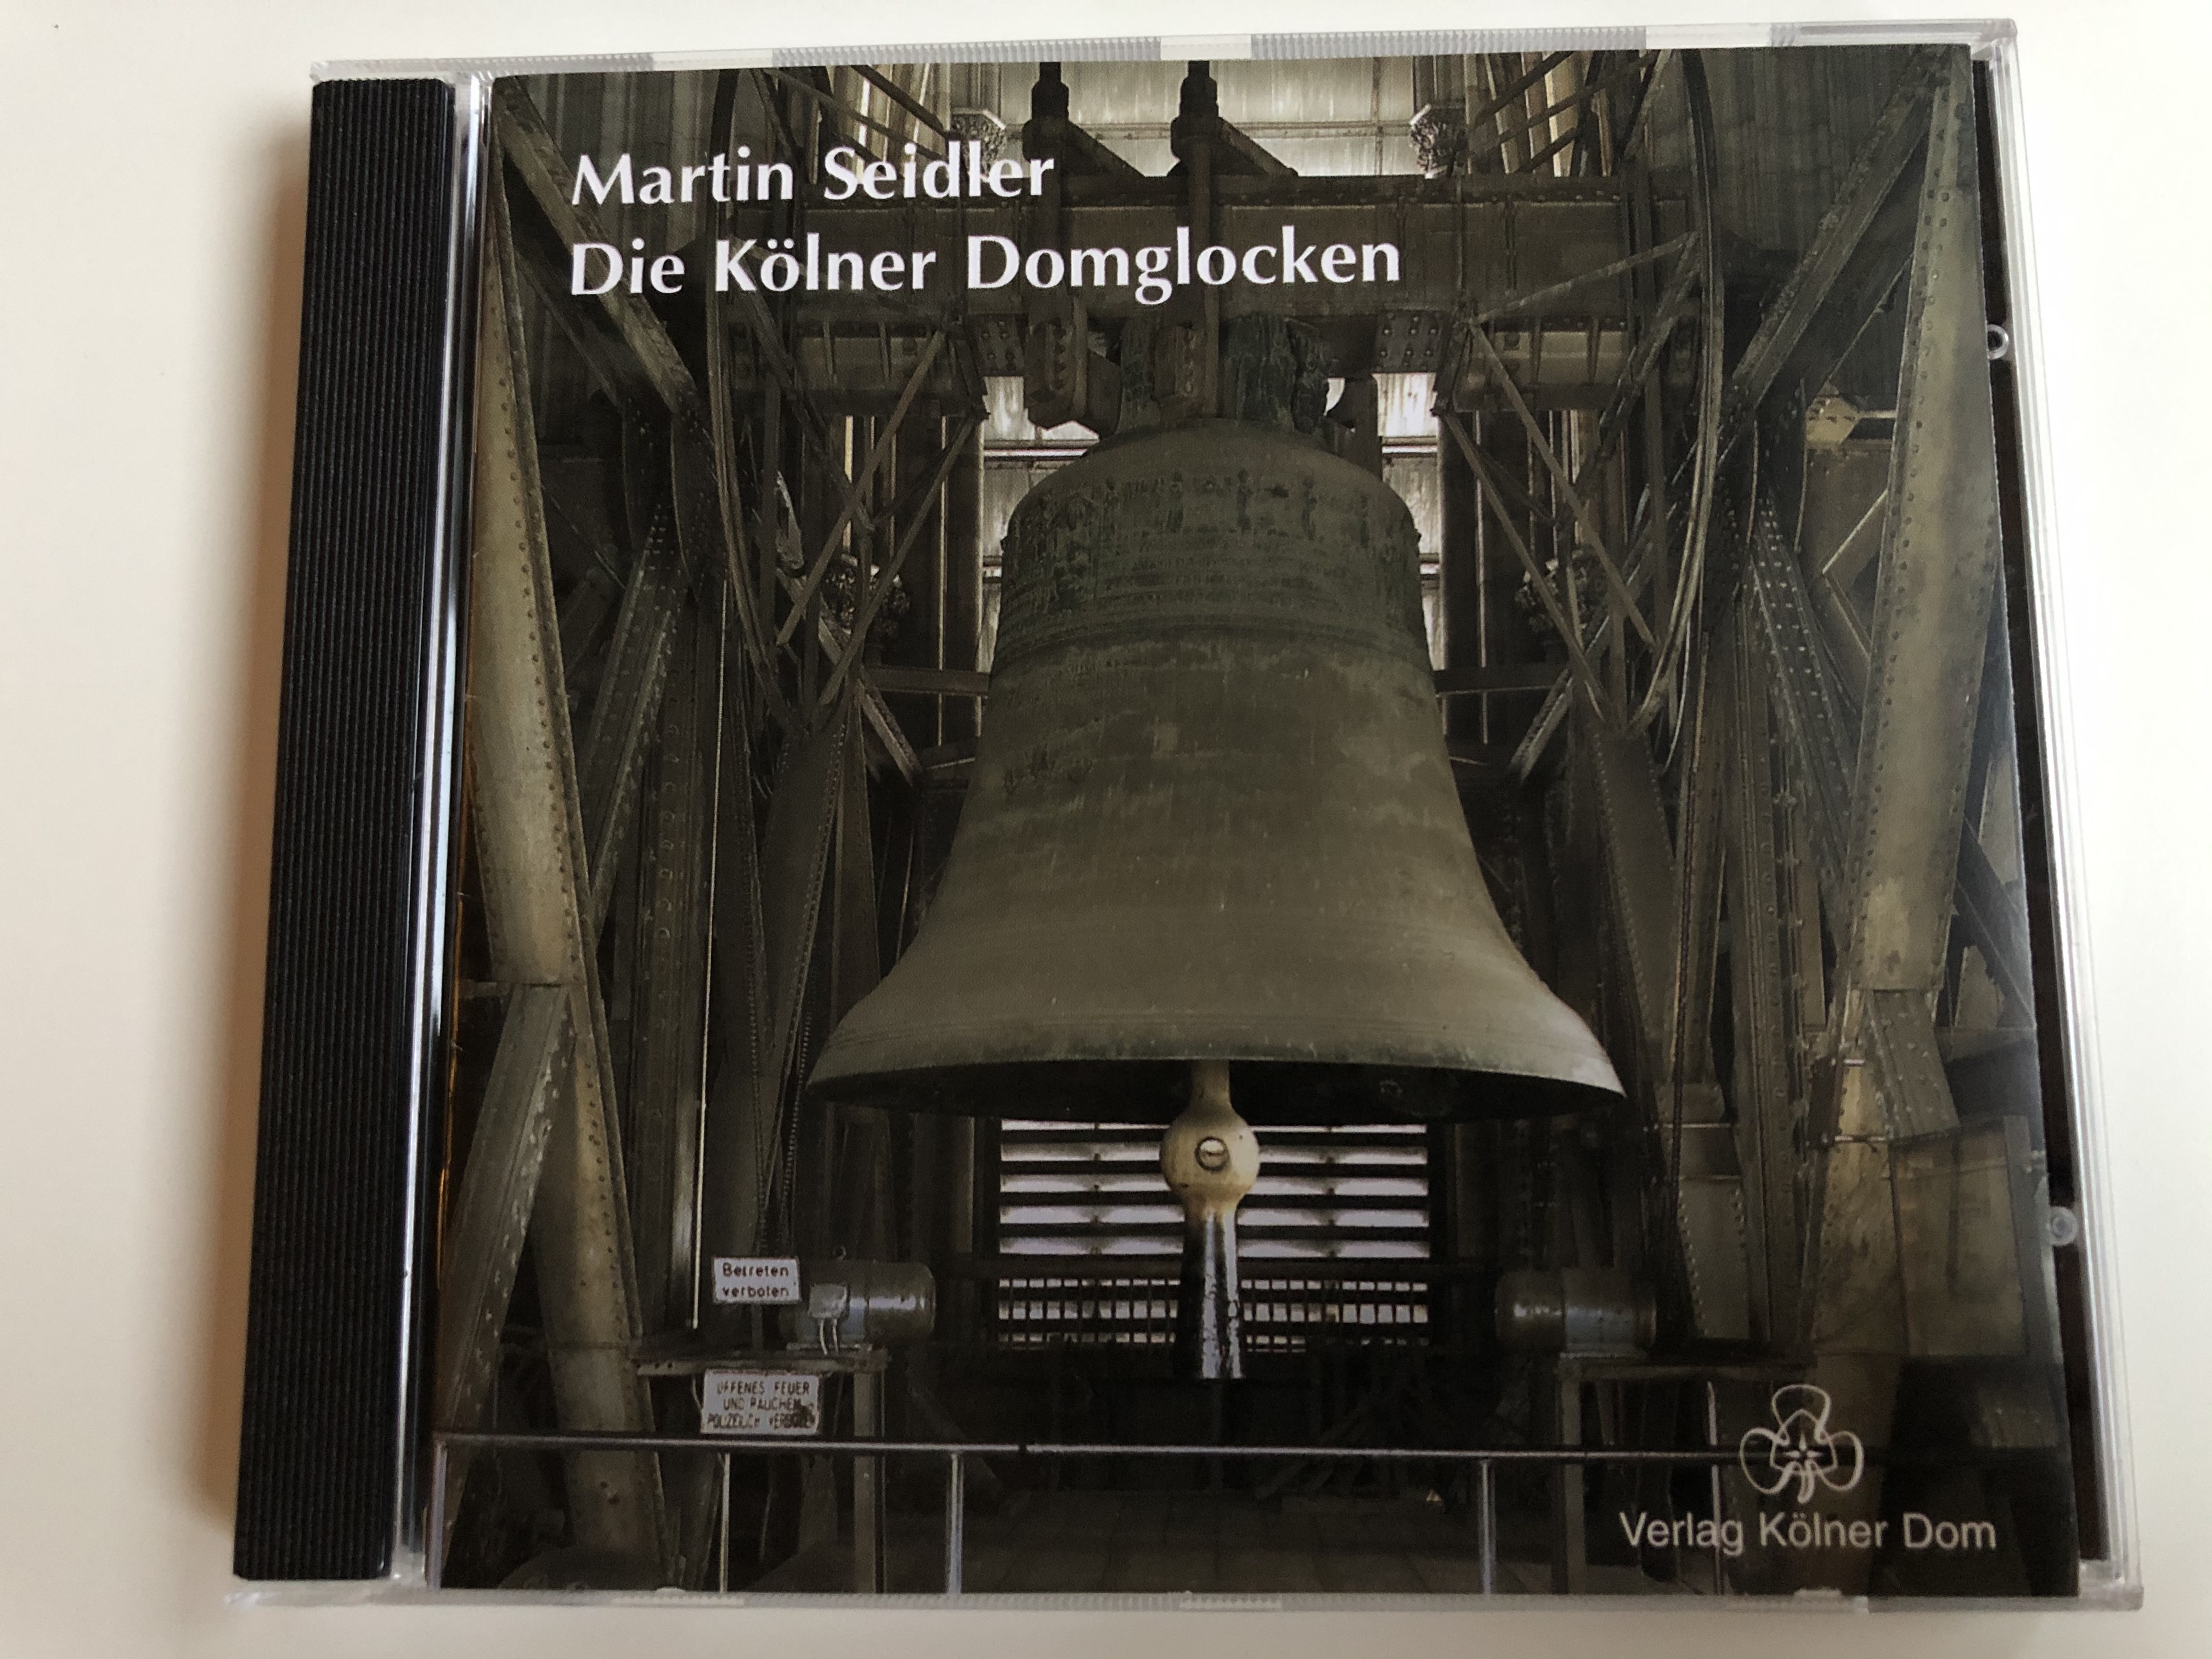 martin-seidler-die-k-lner-domglocken-verlag-k-lner-dom-audio-cd-1992-stereo-mkd-79009-1-.jpg